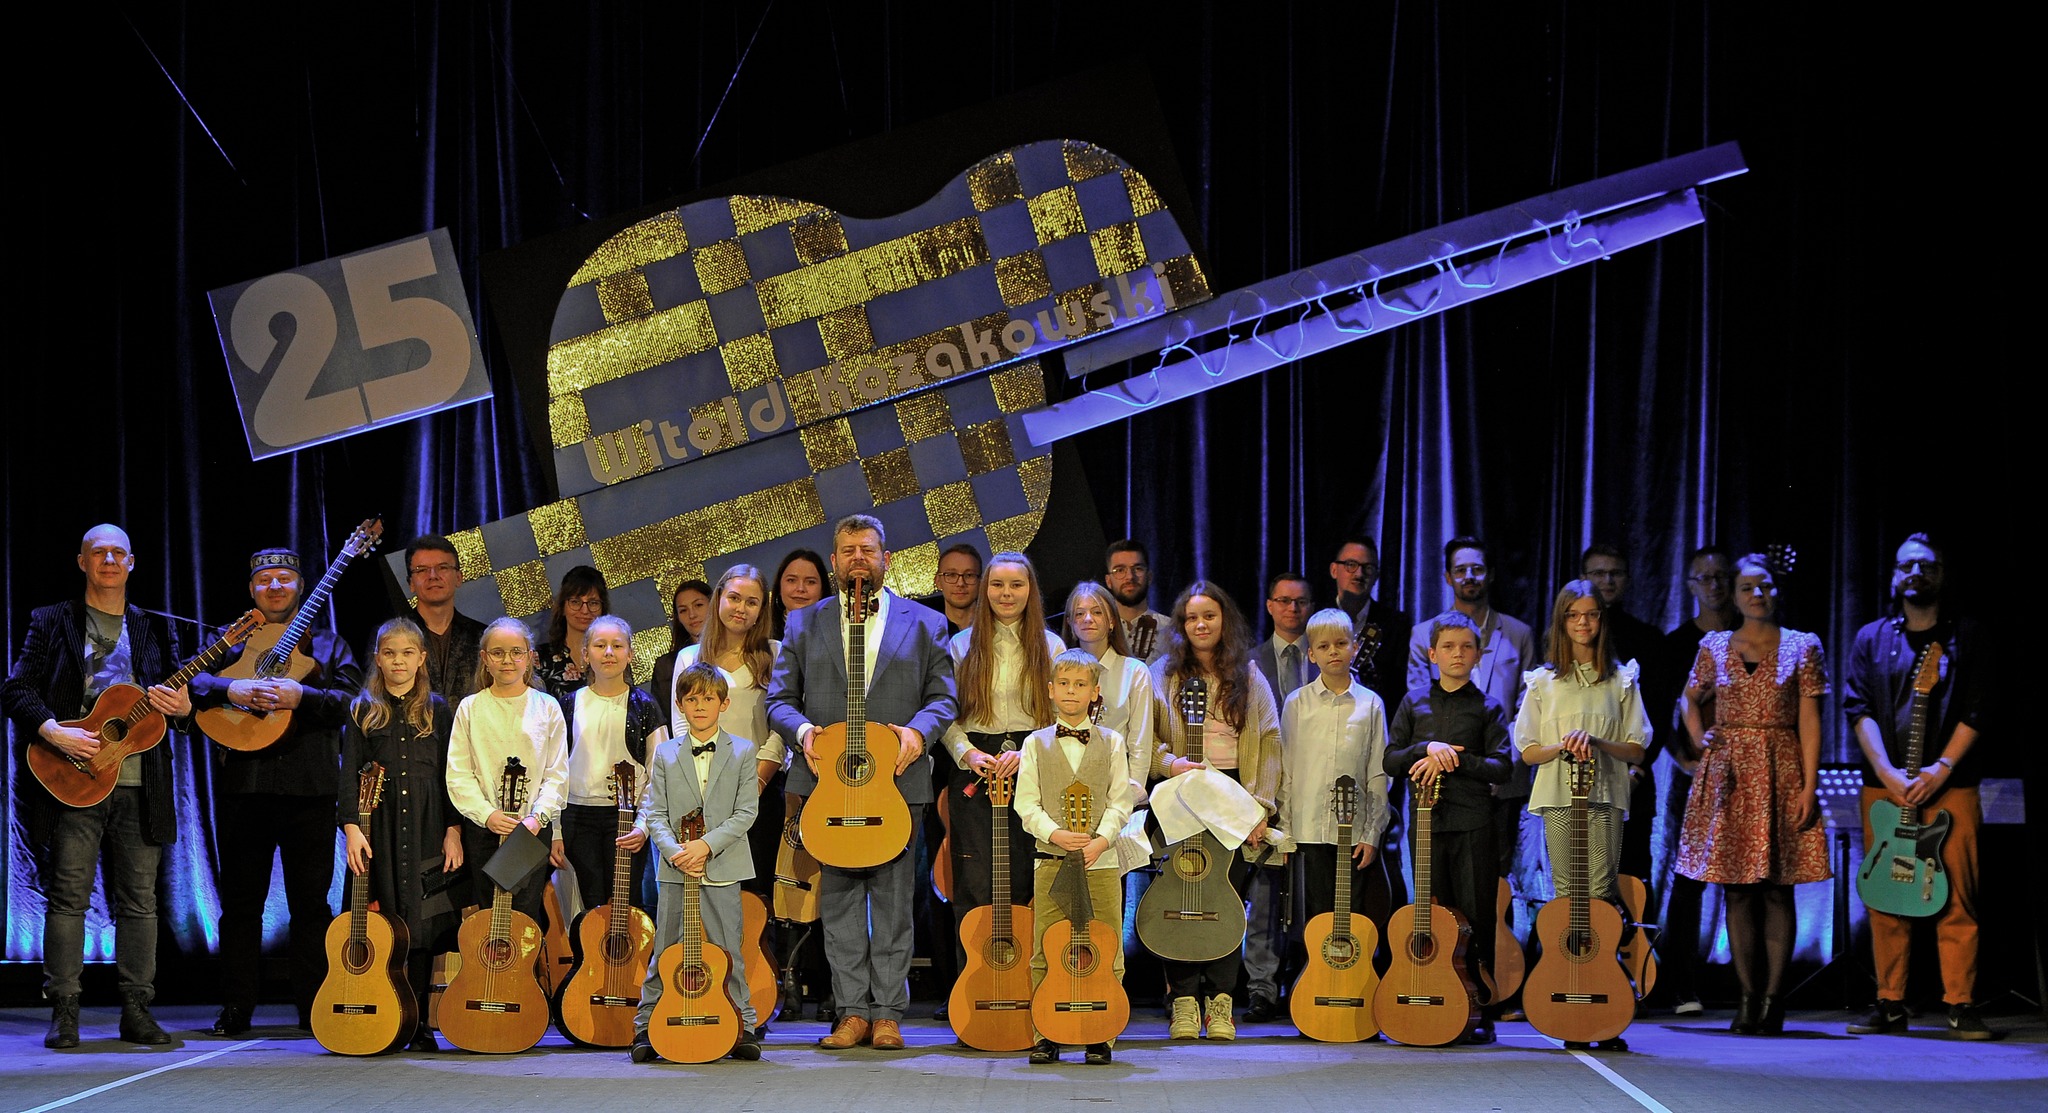 Zdjęcie grupowe wykonane na scenie w Kłodzkim Ośrodku Kultury, wszystkie osoby na zdjęciu trzymają gitarę, a w tle widoczna jest grafika gitary z napisem 25 Witold Kozakowski